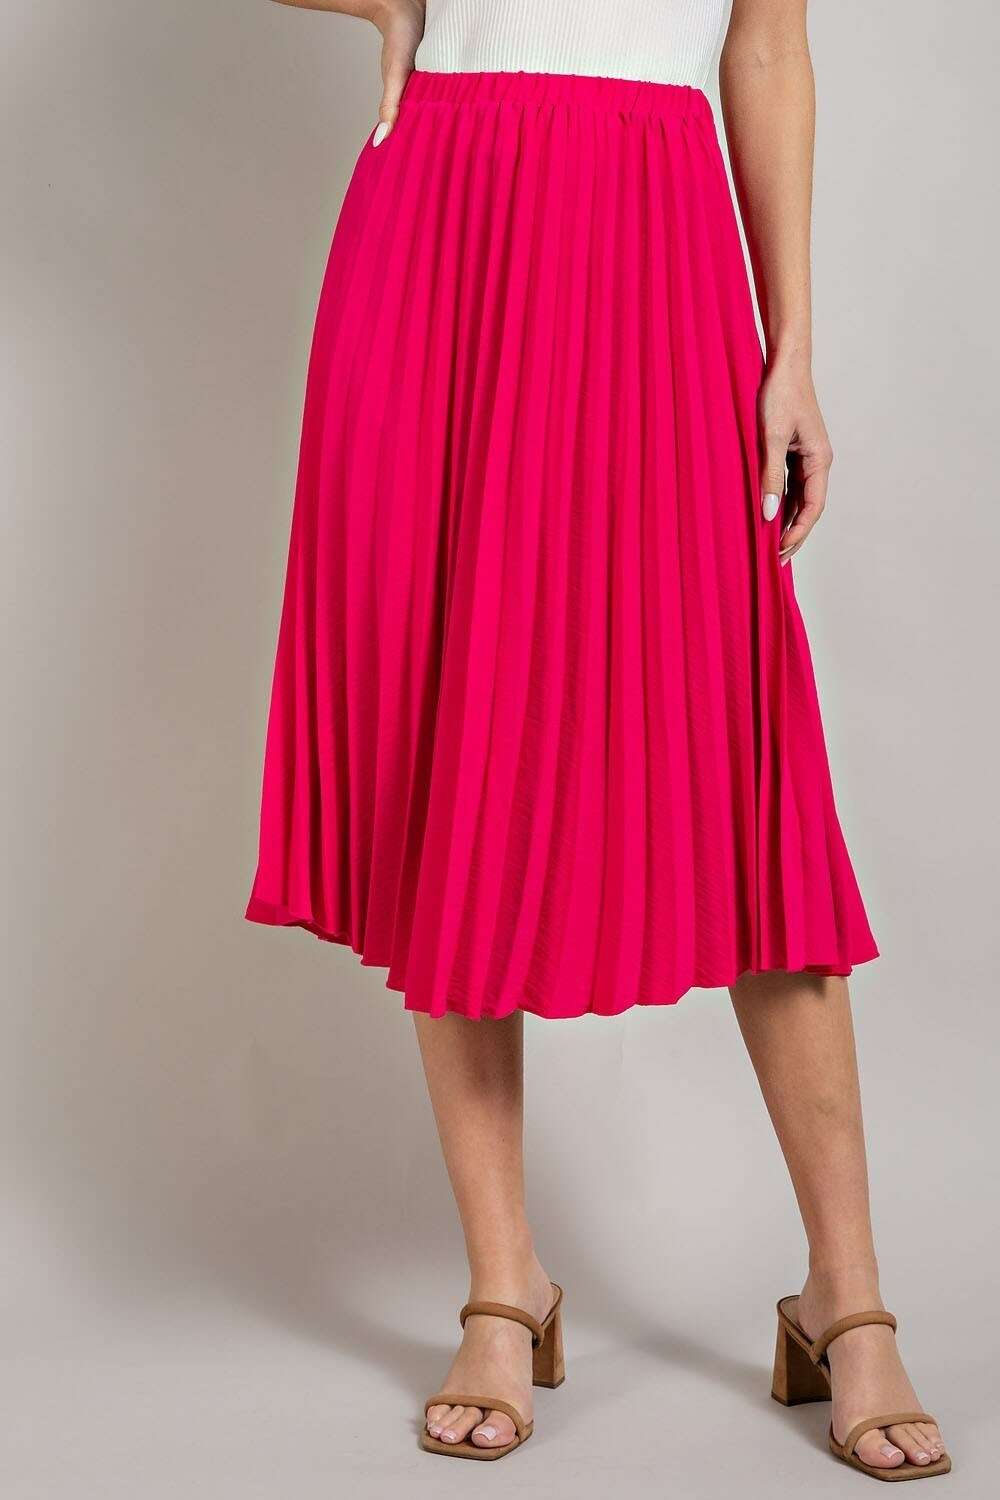 http://thefloralfixx.ca/cdn/shop/files/hot-pink-pleated-midi-skirt--the-floral-fixx-the-floral-fixx-32737743.jpg?v=1698967651&width=1024